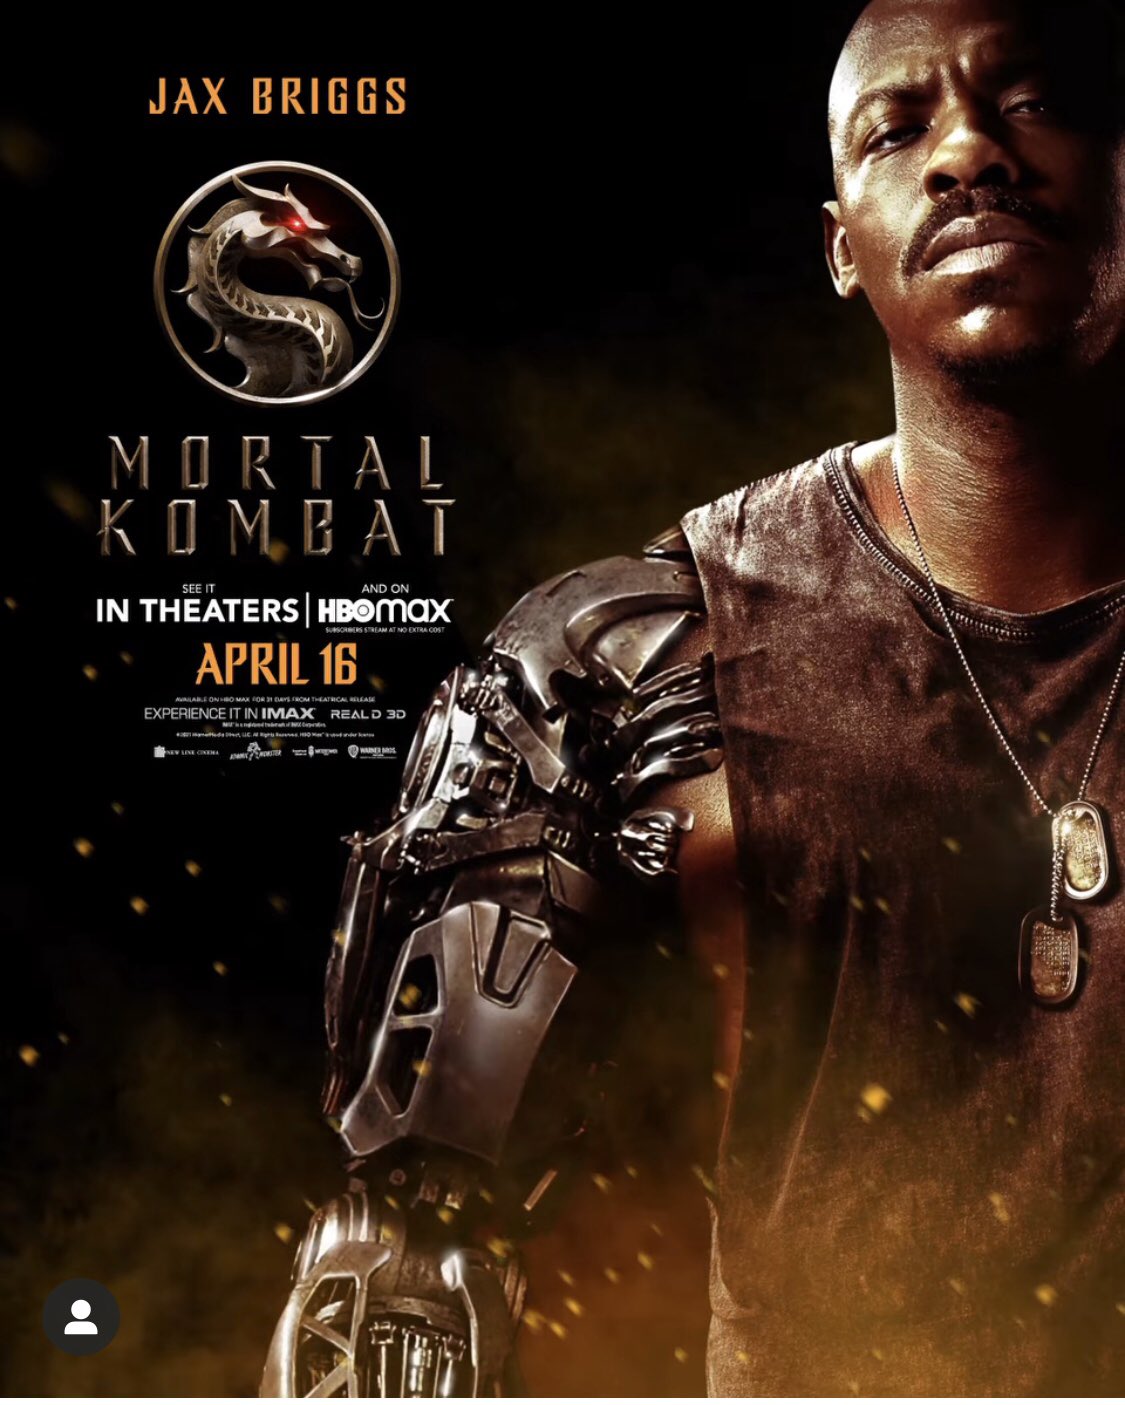 Mortal Kombat” ganha pôsteres em antecipação ao trailer- Olhar Digital